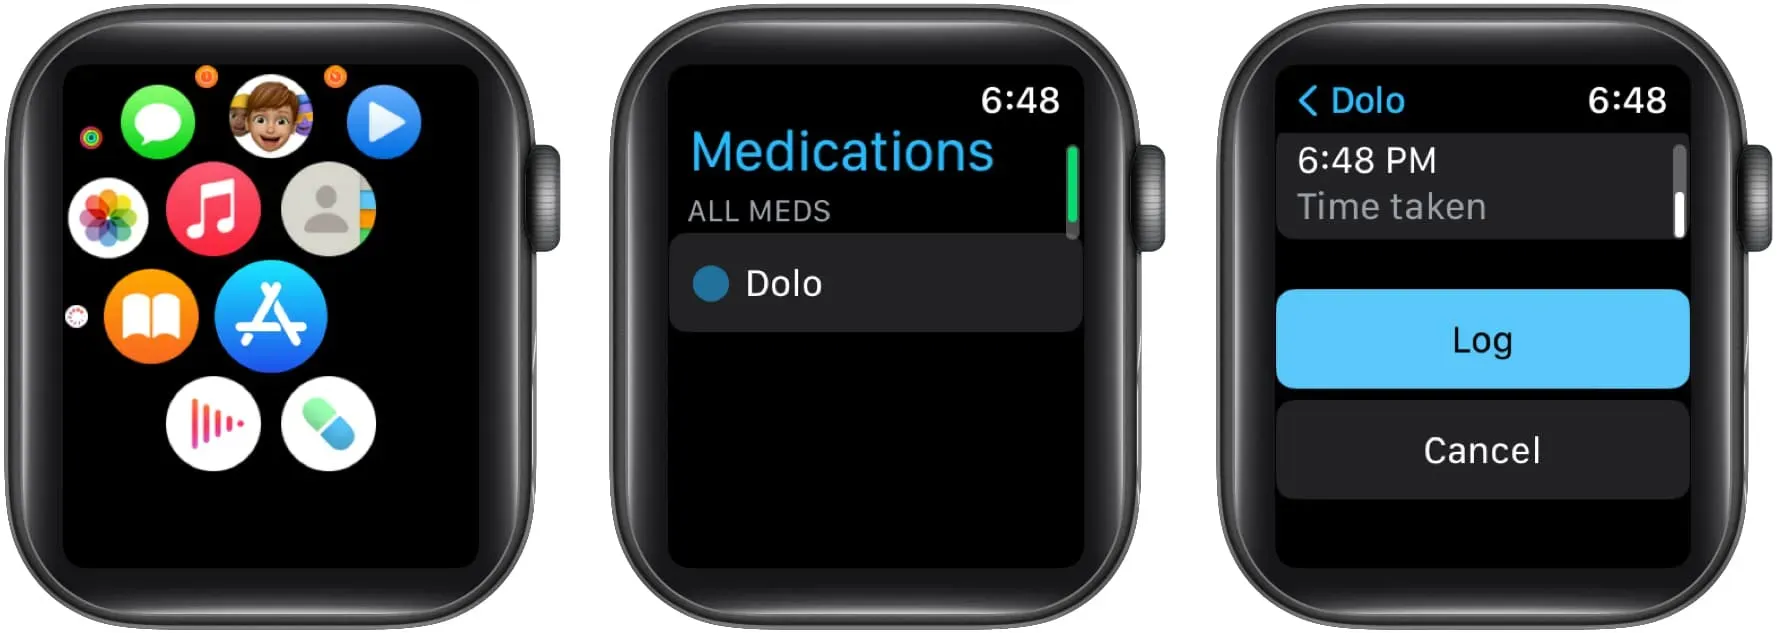 Log medicijnen in op Apple Watch